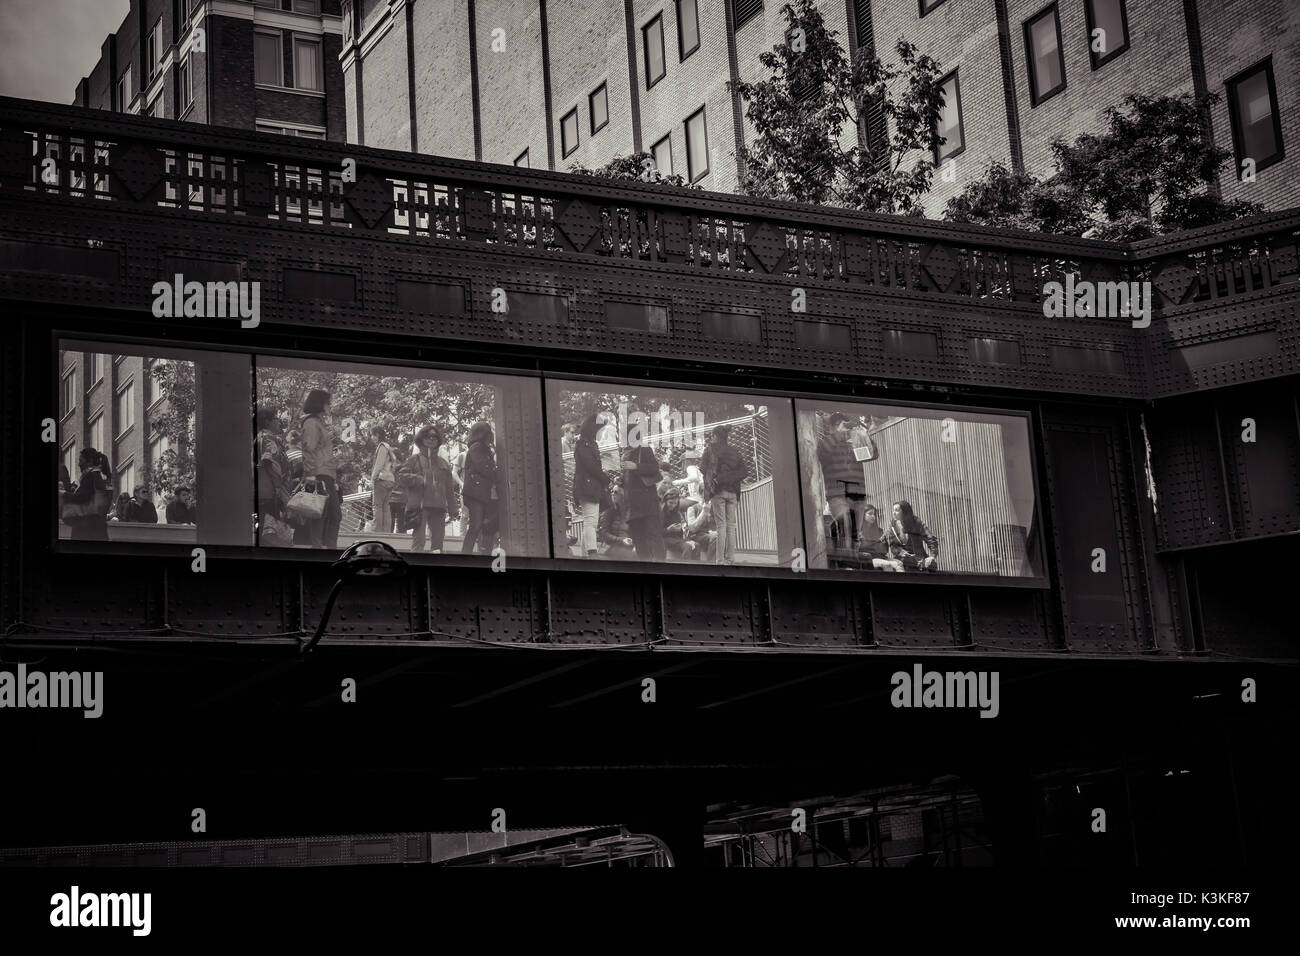 Asiatische Touristische Gruppe Bilder aufnehmen. Die High Line ist ein öffentlicher Park auf einem historischen Freight rail line gebaut erhöht über der Straße in die West Side von Manhattan. Chelsea, Art District, Touristenattraktion und Leben Linie von New York, Manhattan, USA Stockfoto